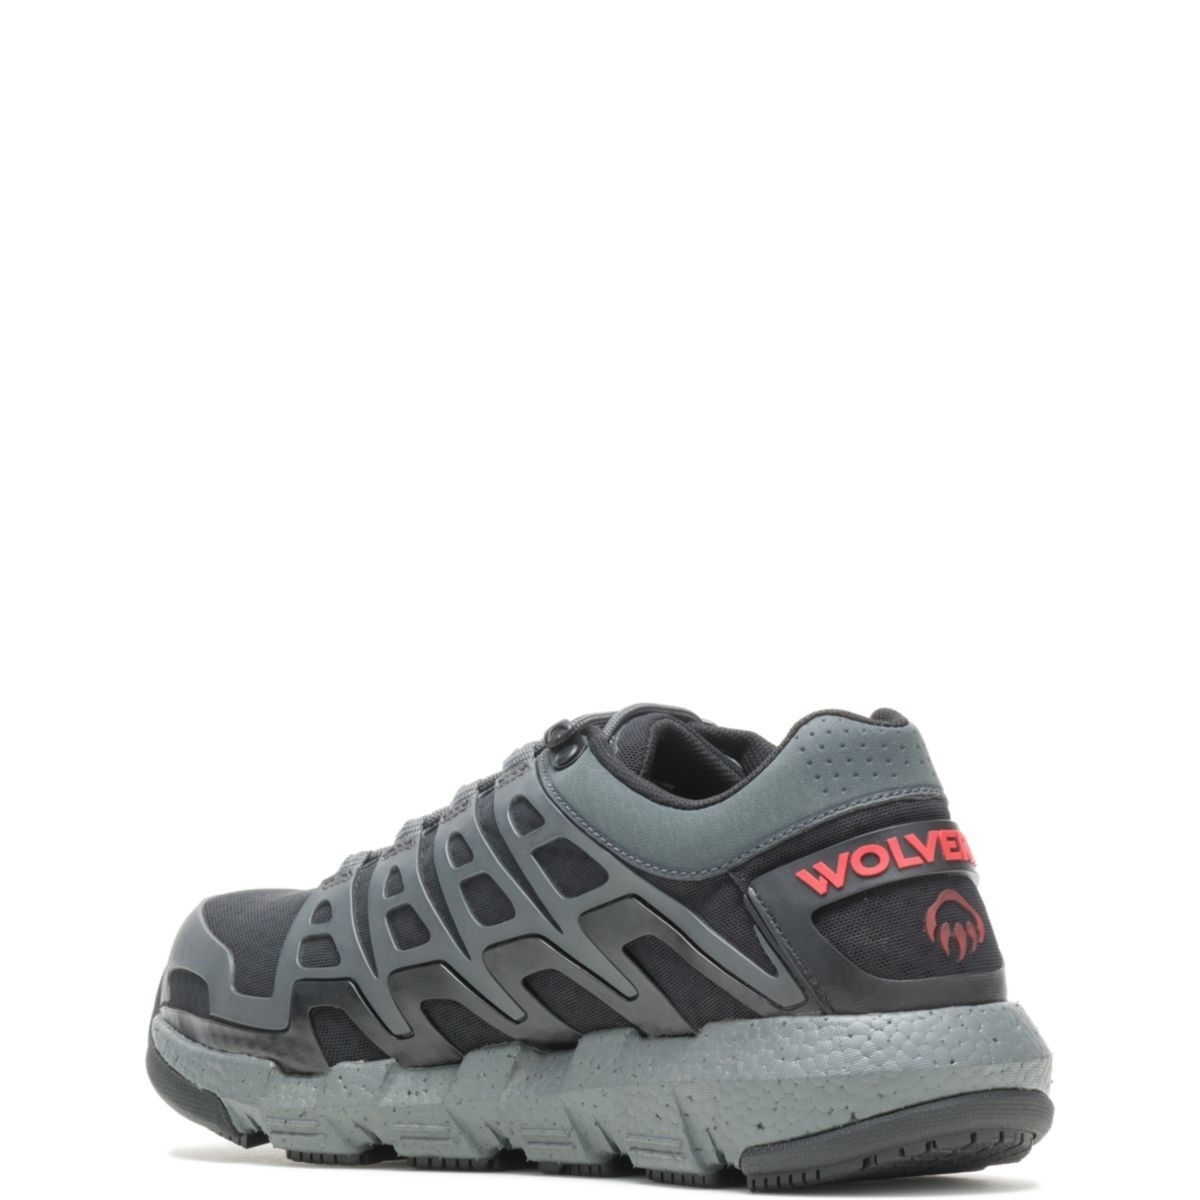 WOLVERINE Men's Rev Vent UltraSpringâ¢ DuraShocksÂ® CarbonMAXÂ® Composite Toe Work Shoe Charcoal - W211016 CHARCOAL - CHARCOAL, 13 X-Wide